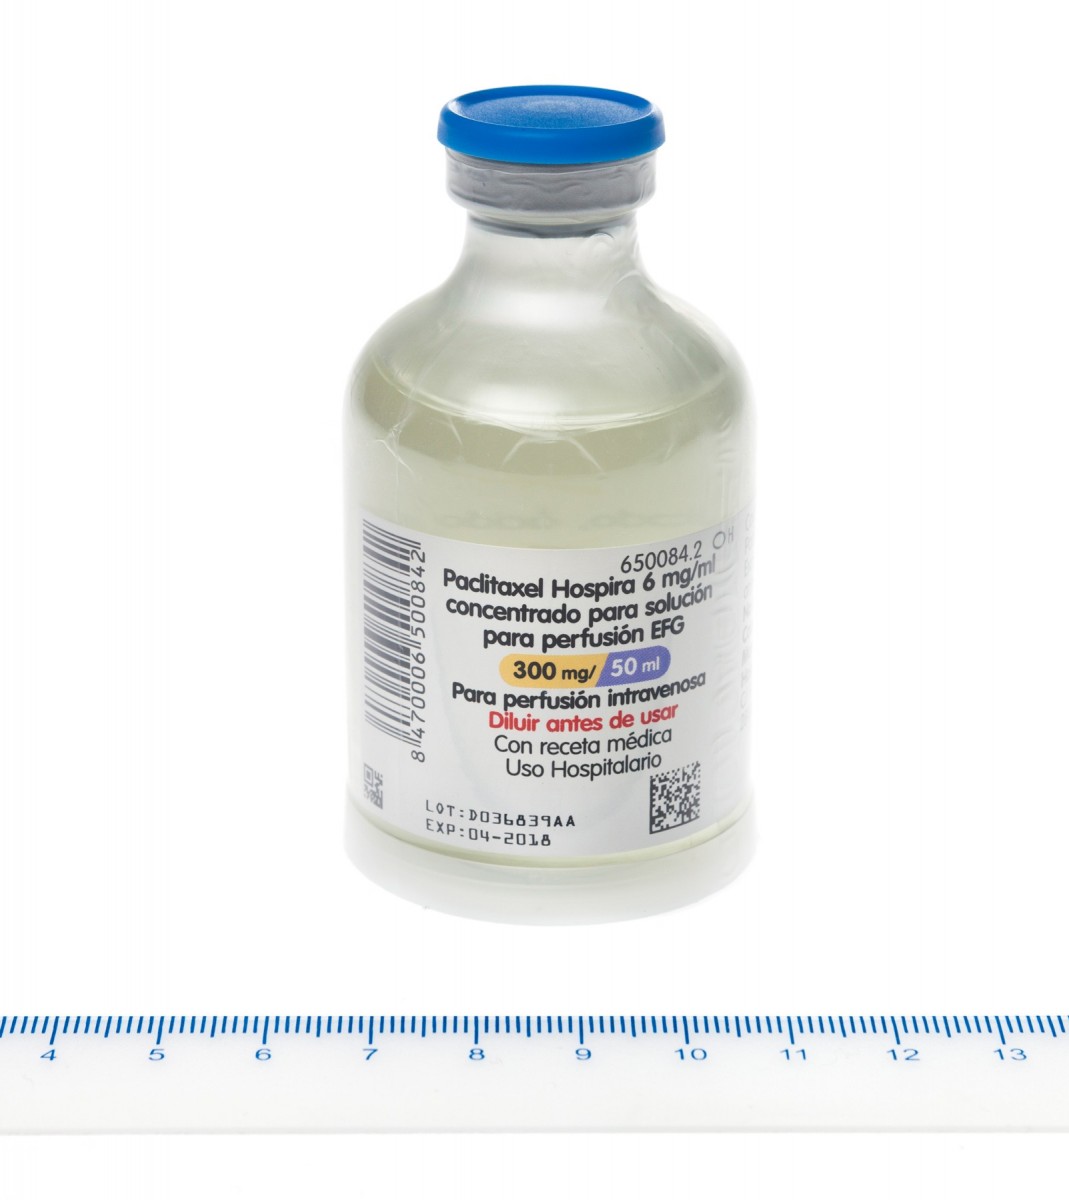 PACLITAXEL HOSPIRA 6 mg/ml CONCENTRADO PARA SOLUCION PARA PERFUSION EFG , 1 vial de 50 ml fotografía de la forma farmacéutica.